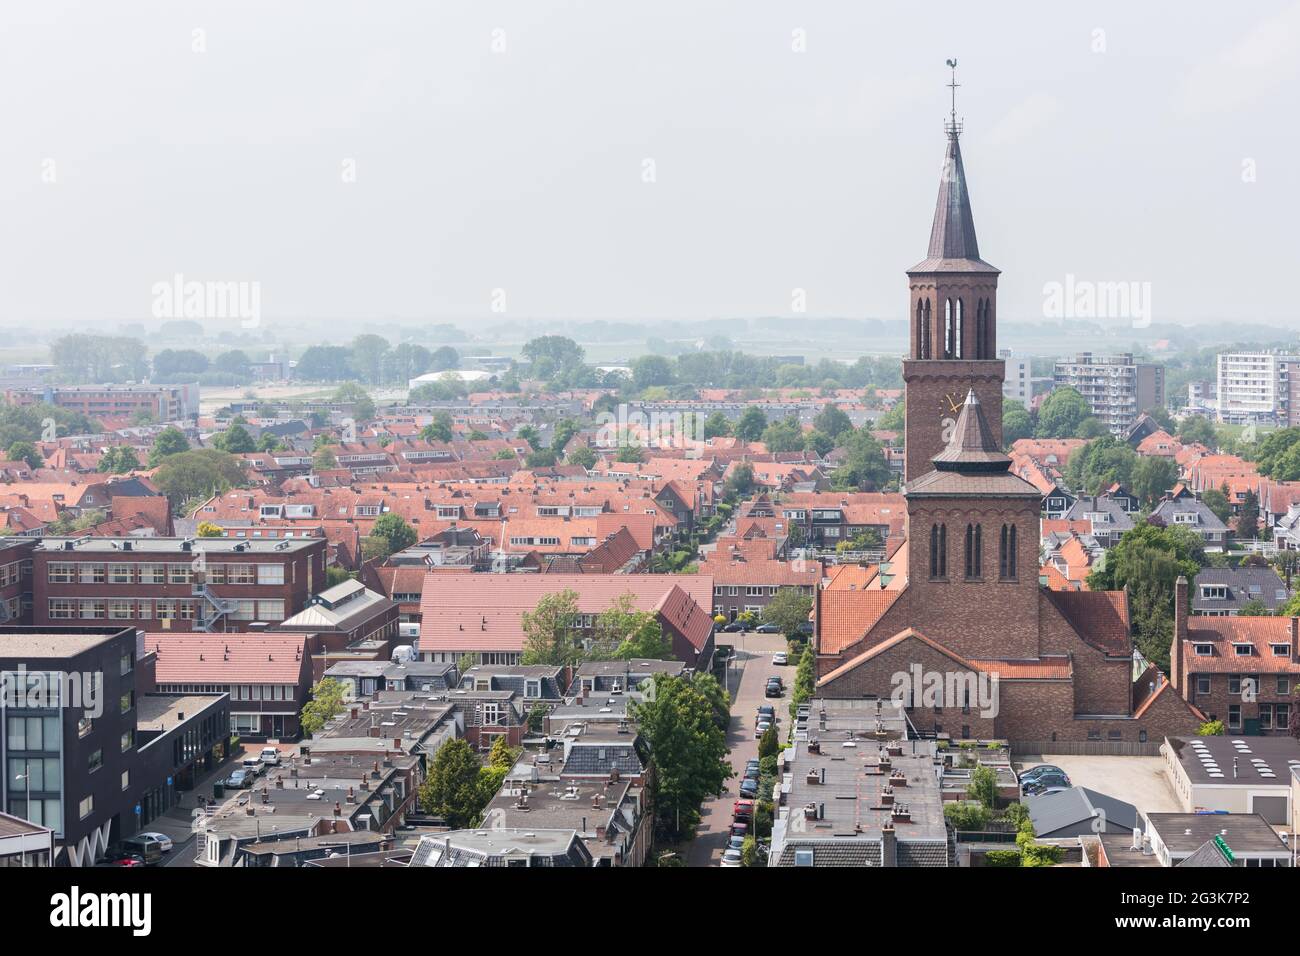 LEEUWARDEN, Paesi Bassi - 28 Maggio 2016: vista di una parte di Leeuwarden con una grande chiesa su 28 maggio, 2016. Foto Stock